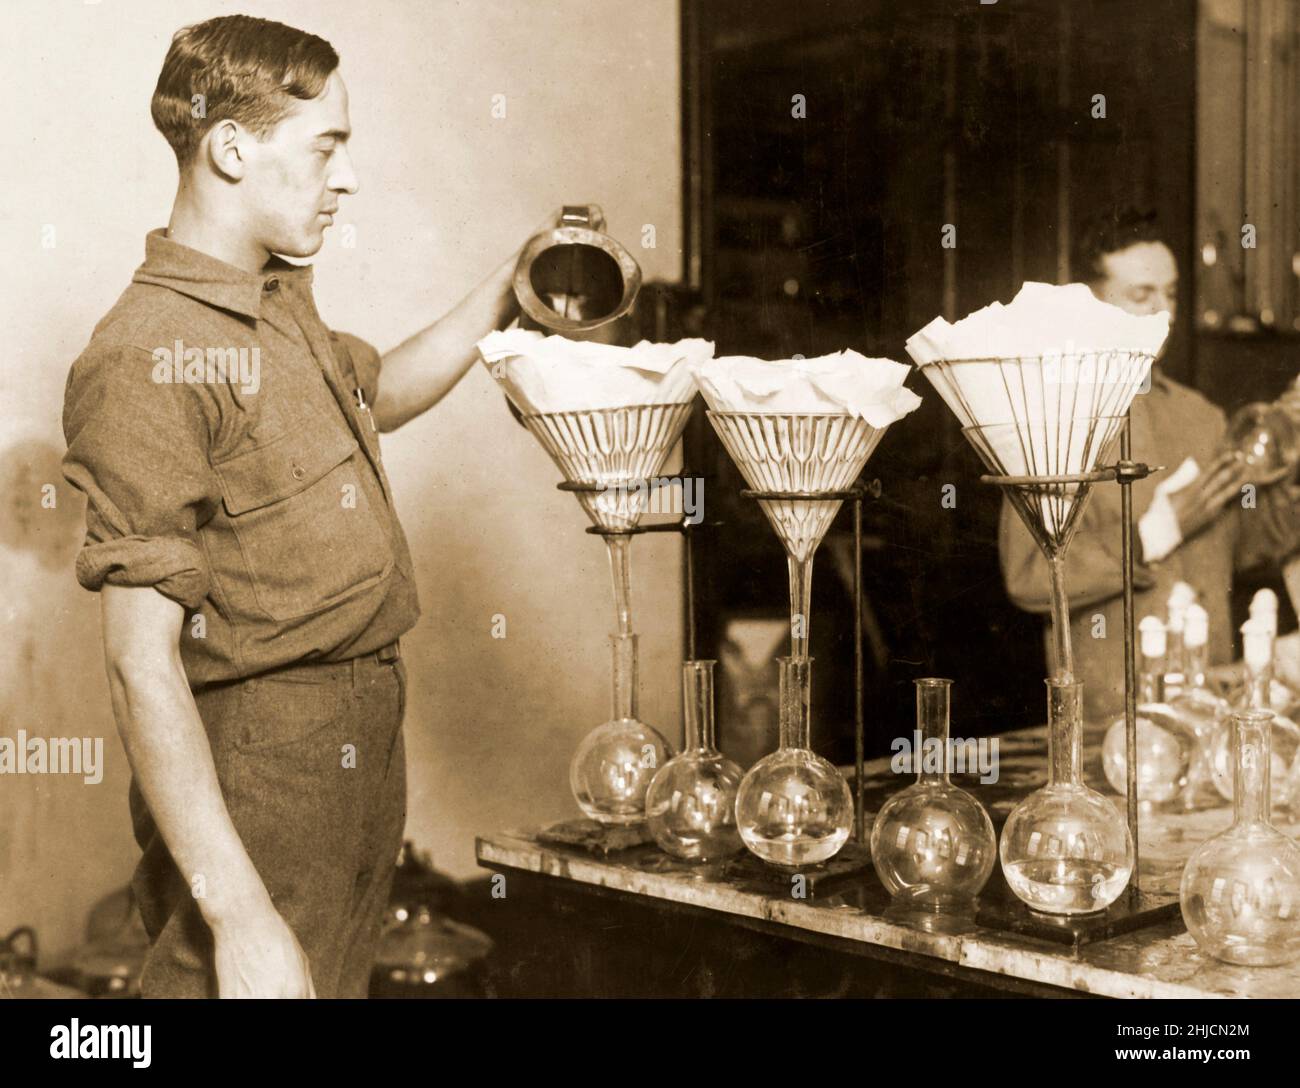 Herstellung von Typhusimpfstoffen, 1917. Das Foto zeigt den ersten Schritt bei der Herstellung des Impfstoffs: Das Mischen der Salzlösung. Medizinische Fakultät der US-Armee. Stockfoto